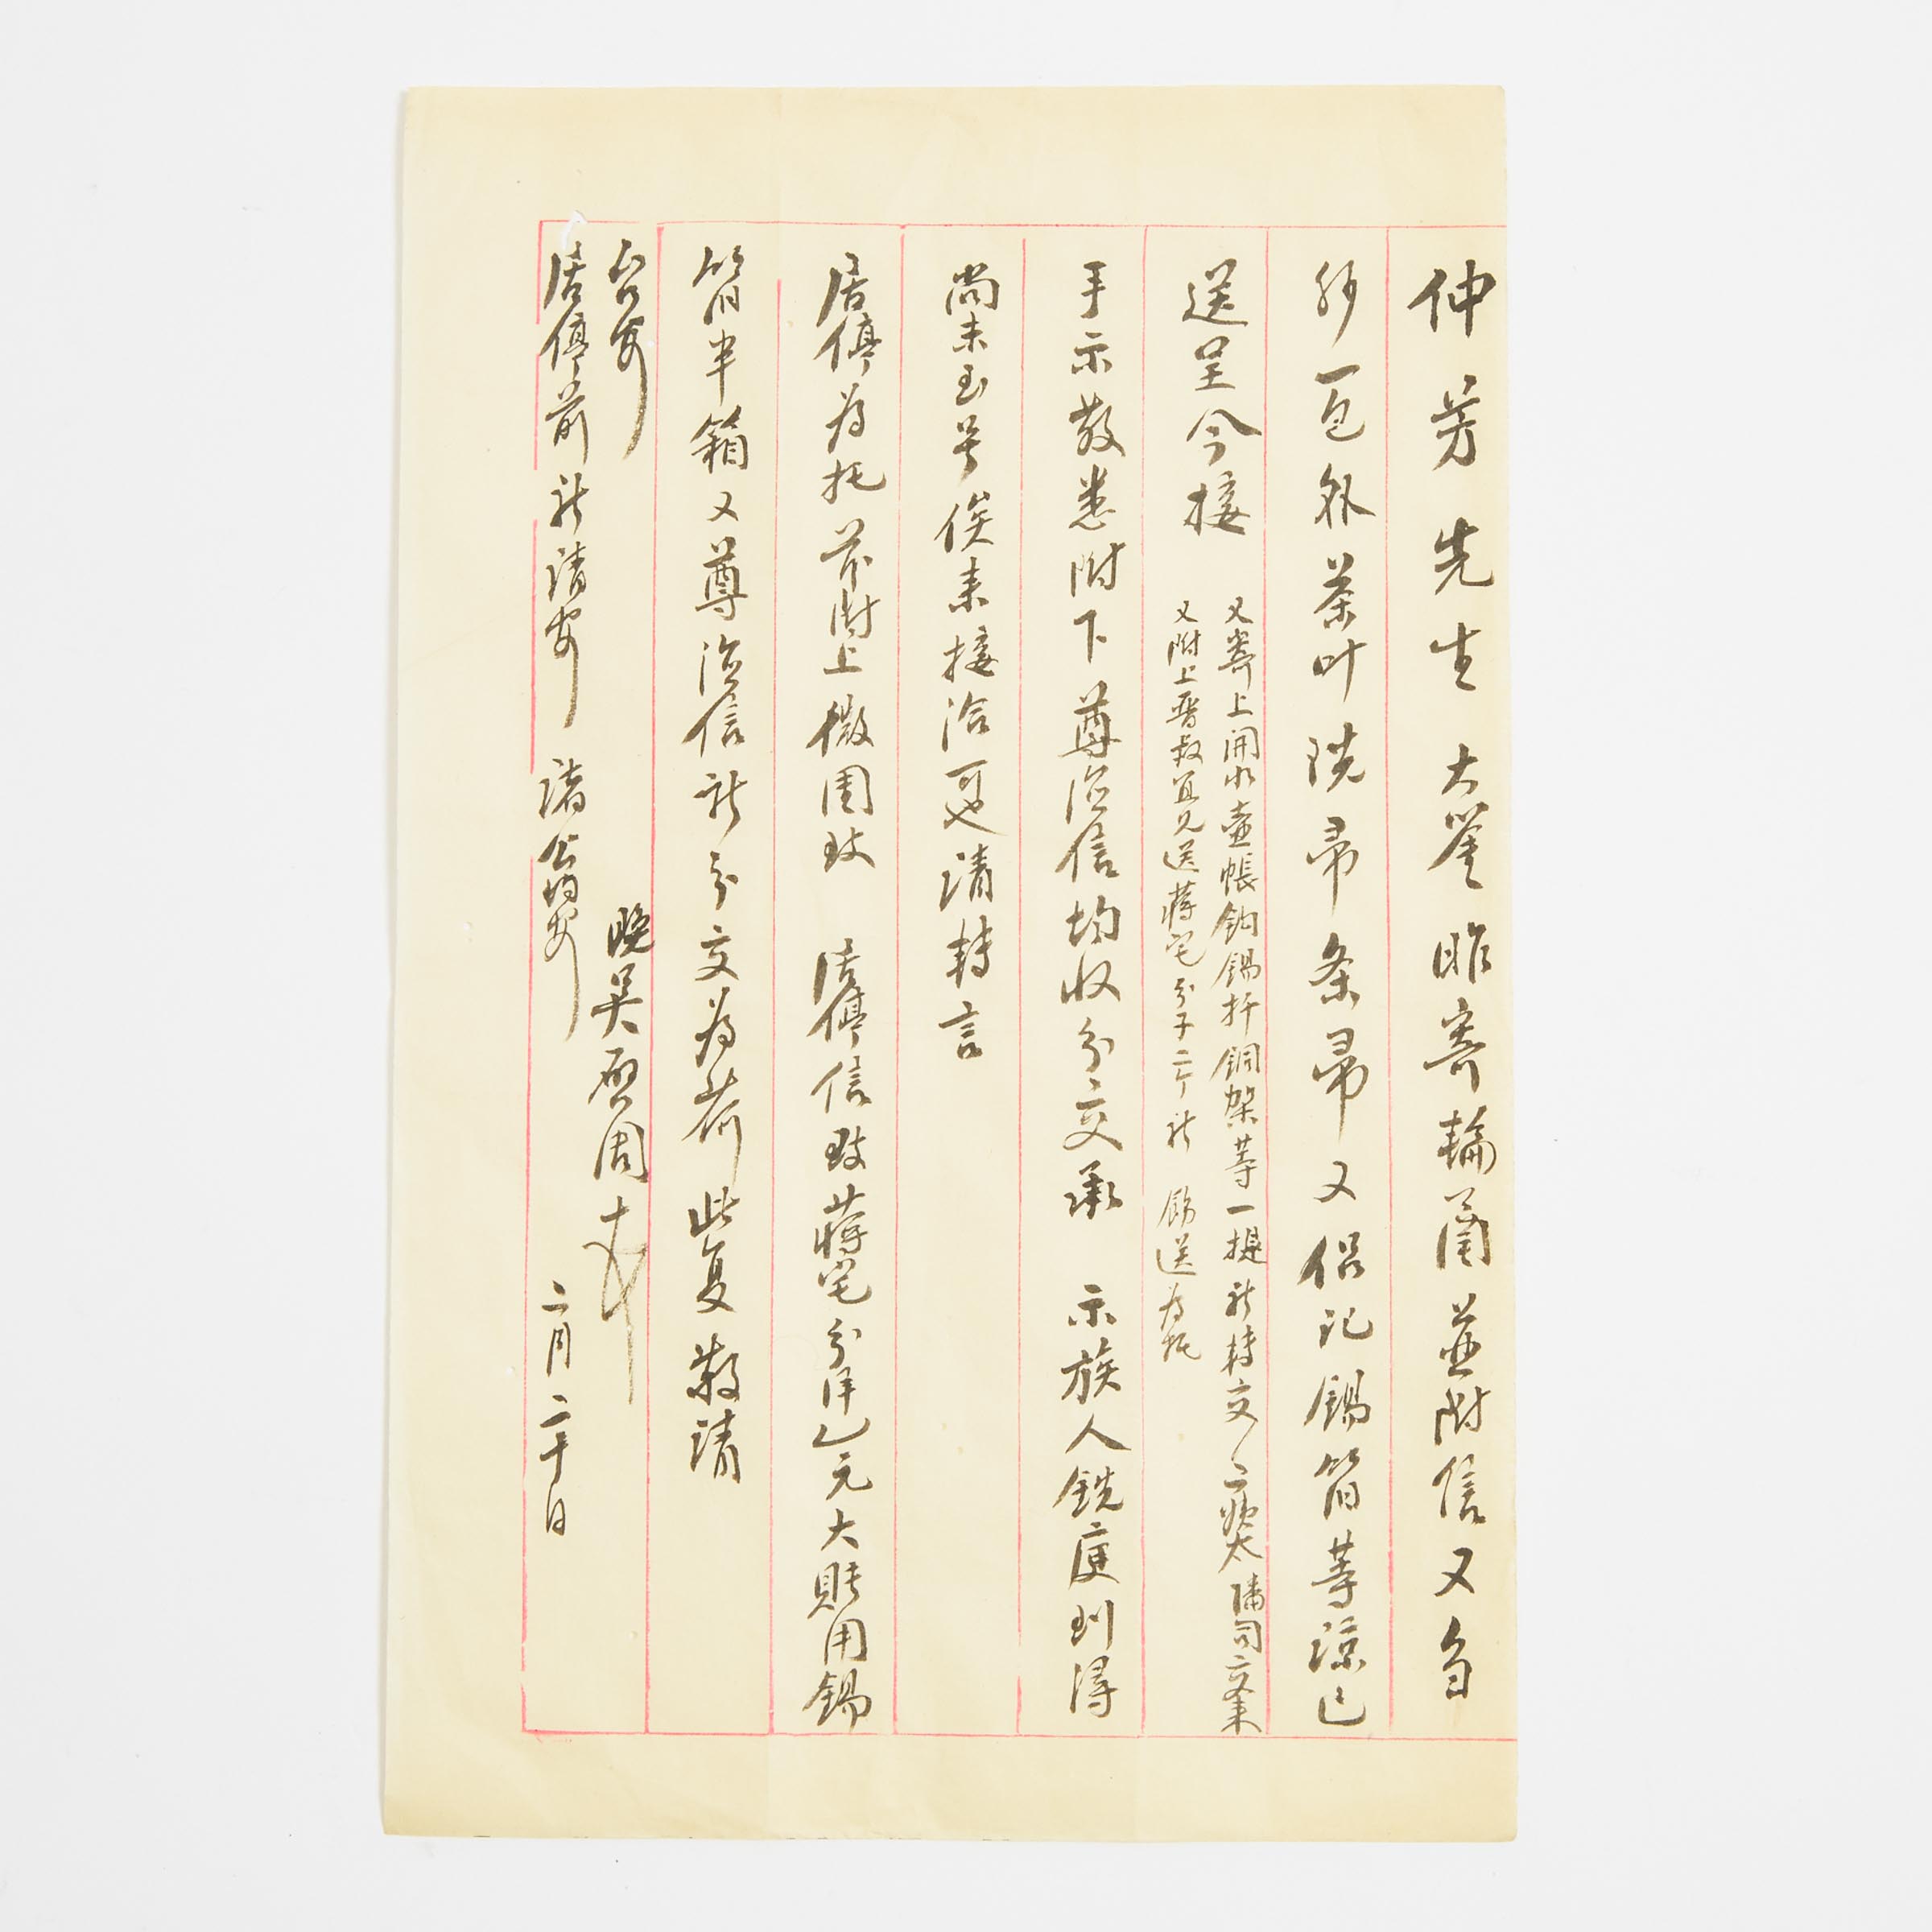 Wu Qizhou (K.K. Chow), Letter to Mr. Zhong Fang, Republican Period